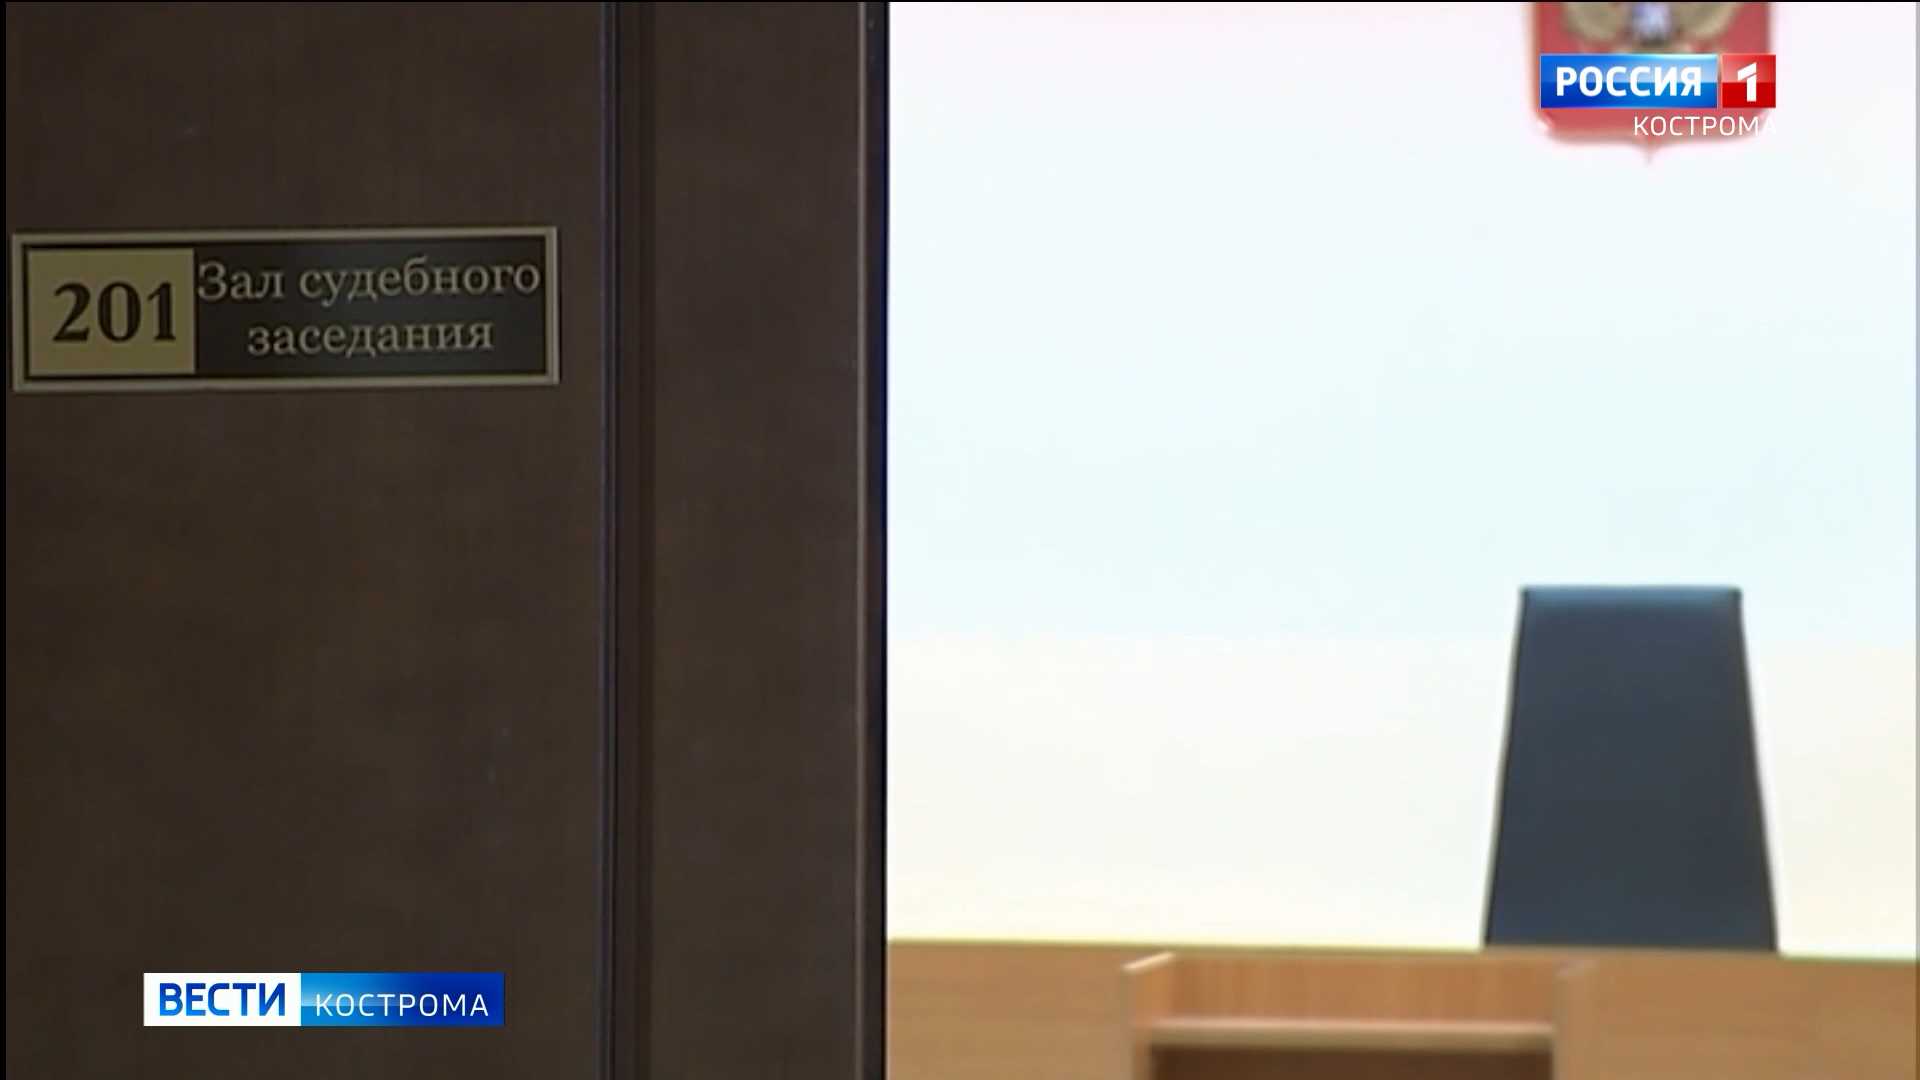 Сотрудницу почтового отделения в Костроме будут судить за присвоение 200 тысяч рублей